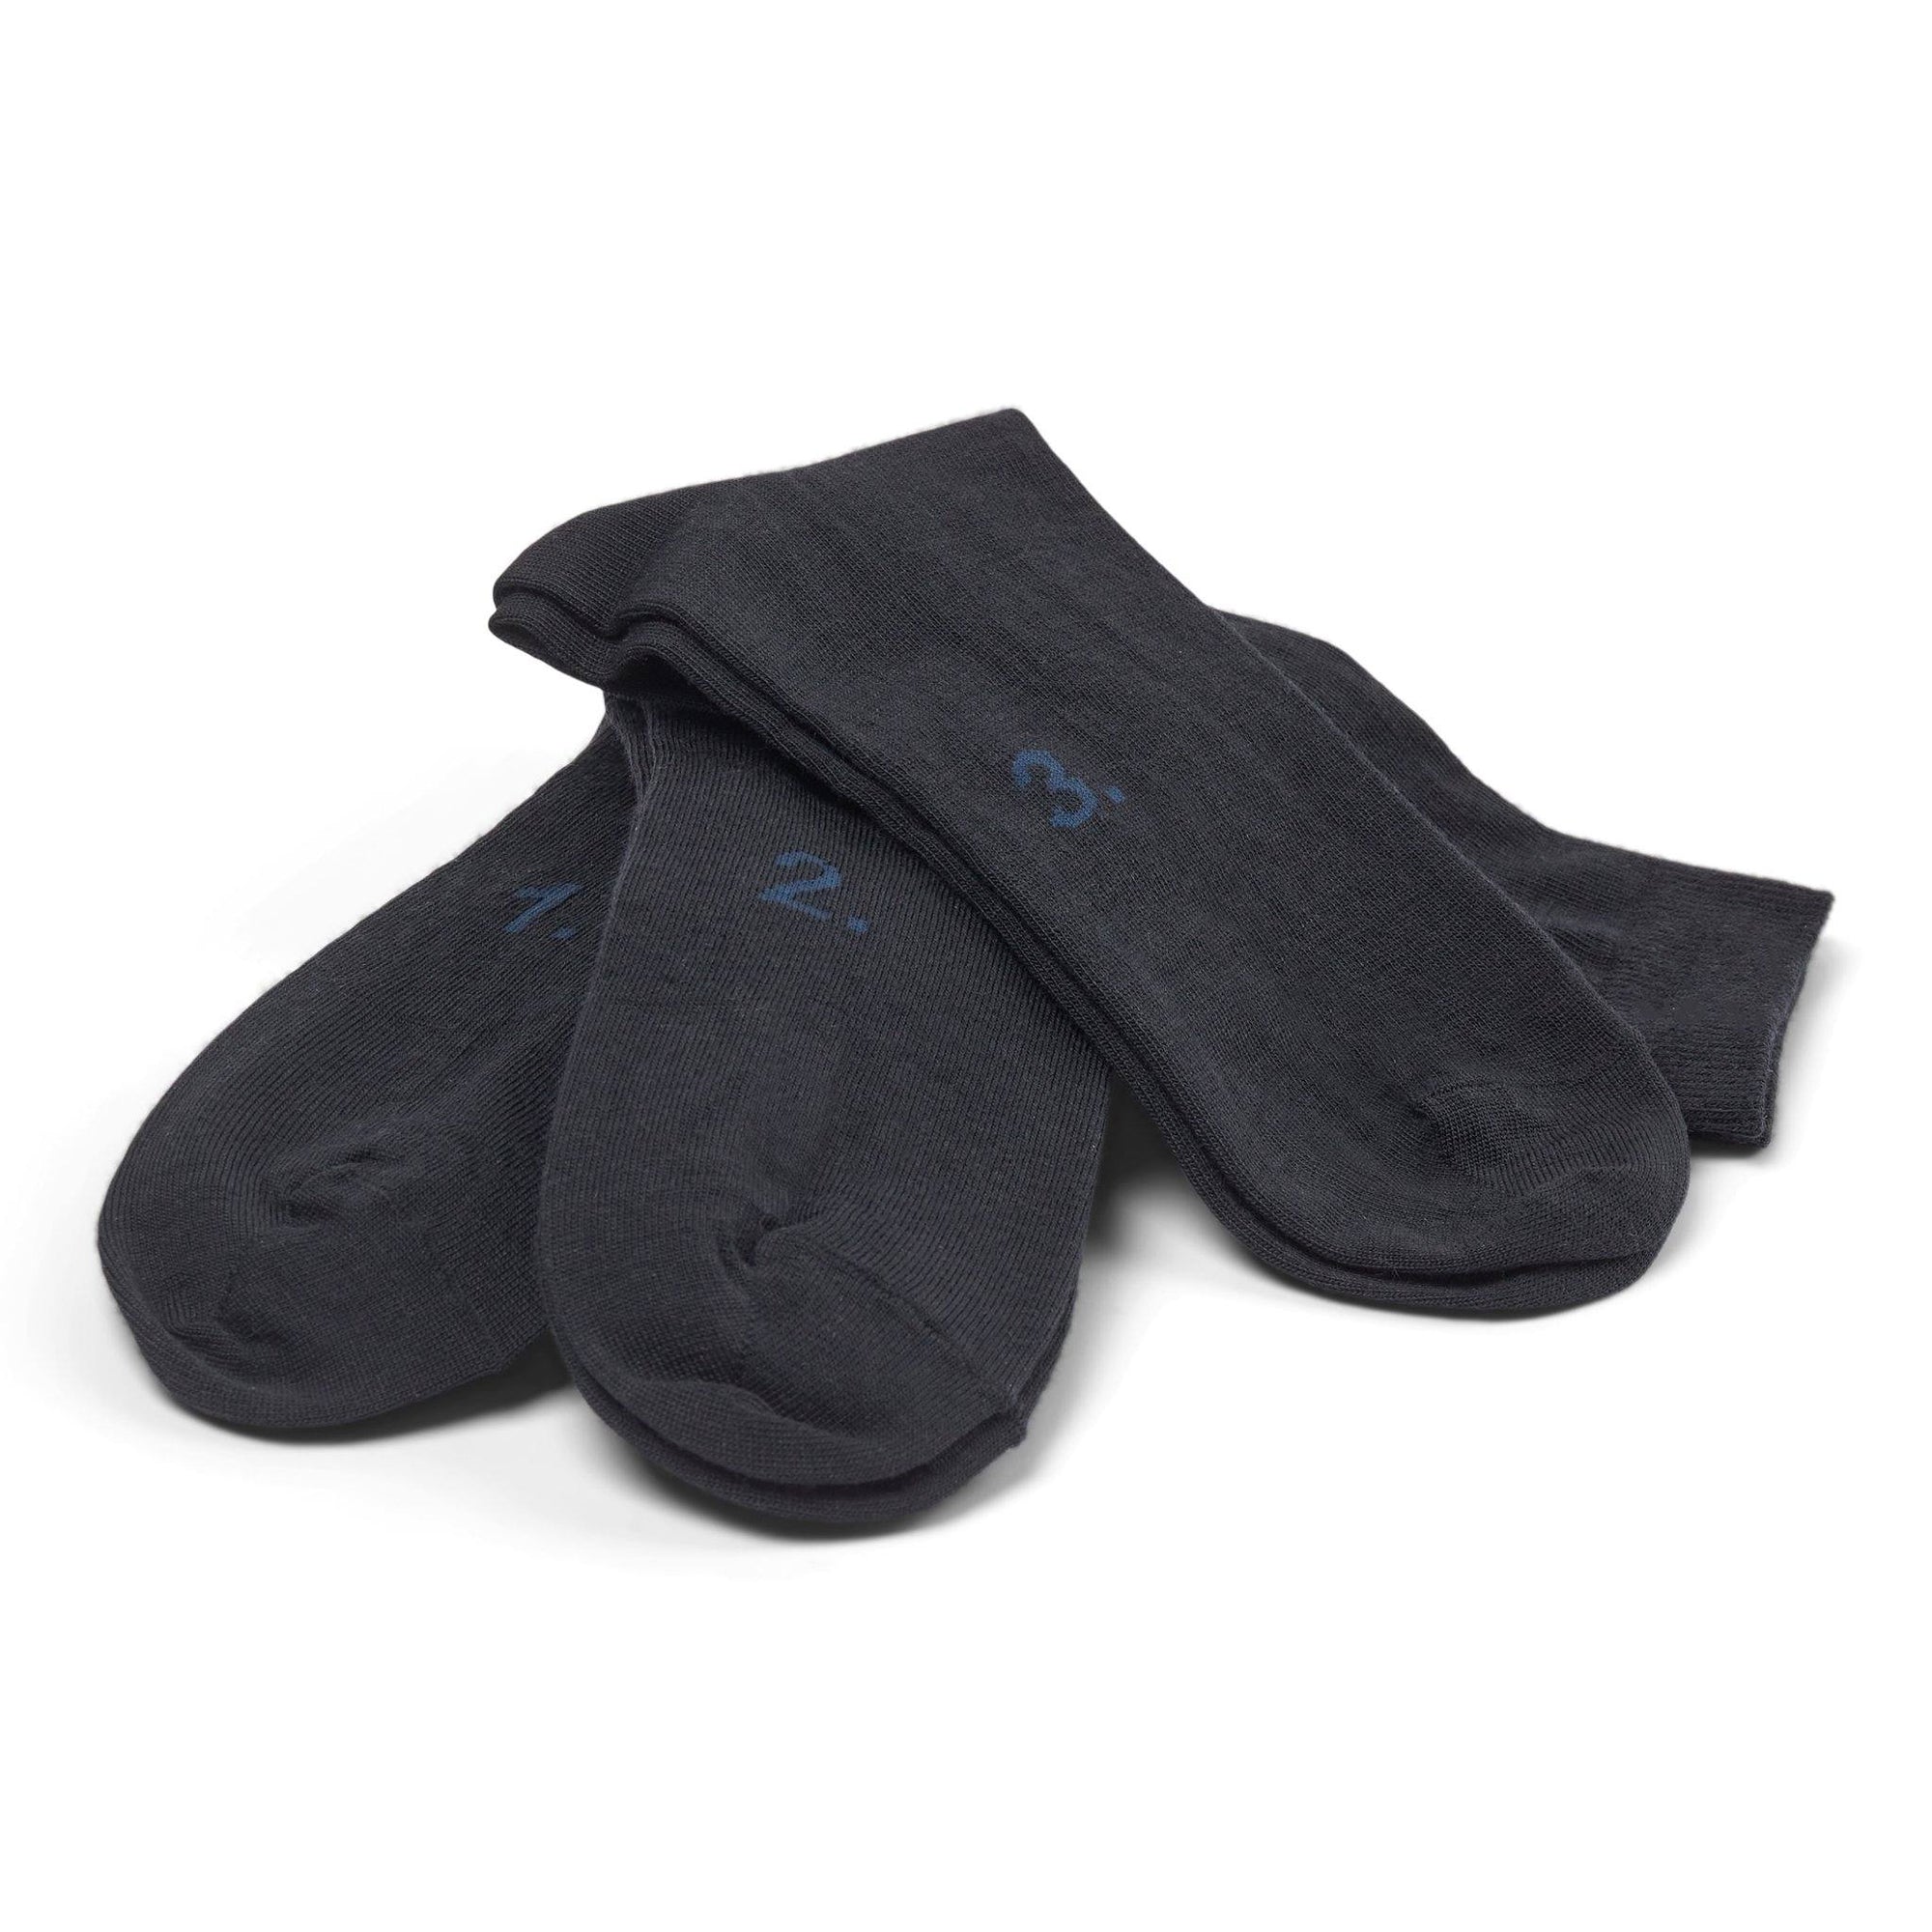 10socks – Mørkeblå sokker – 10Socks sokker – Sumisura